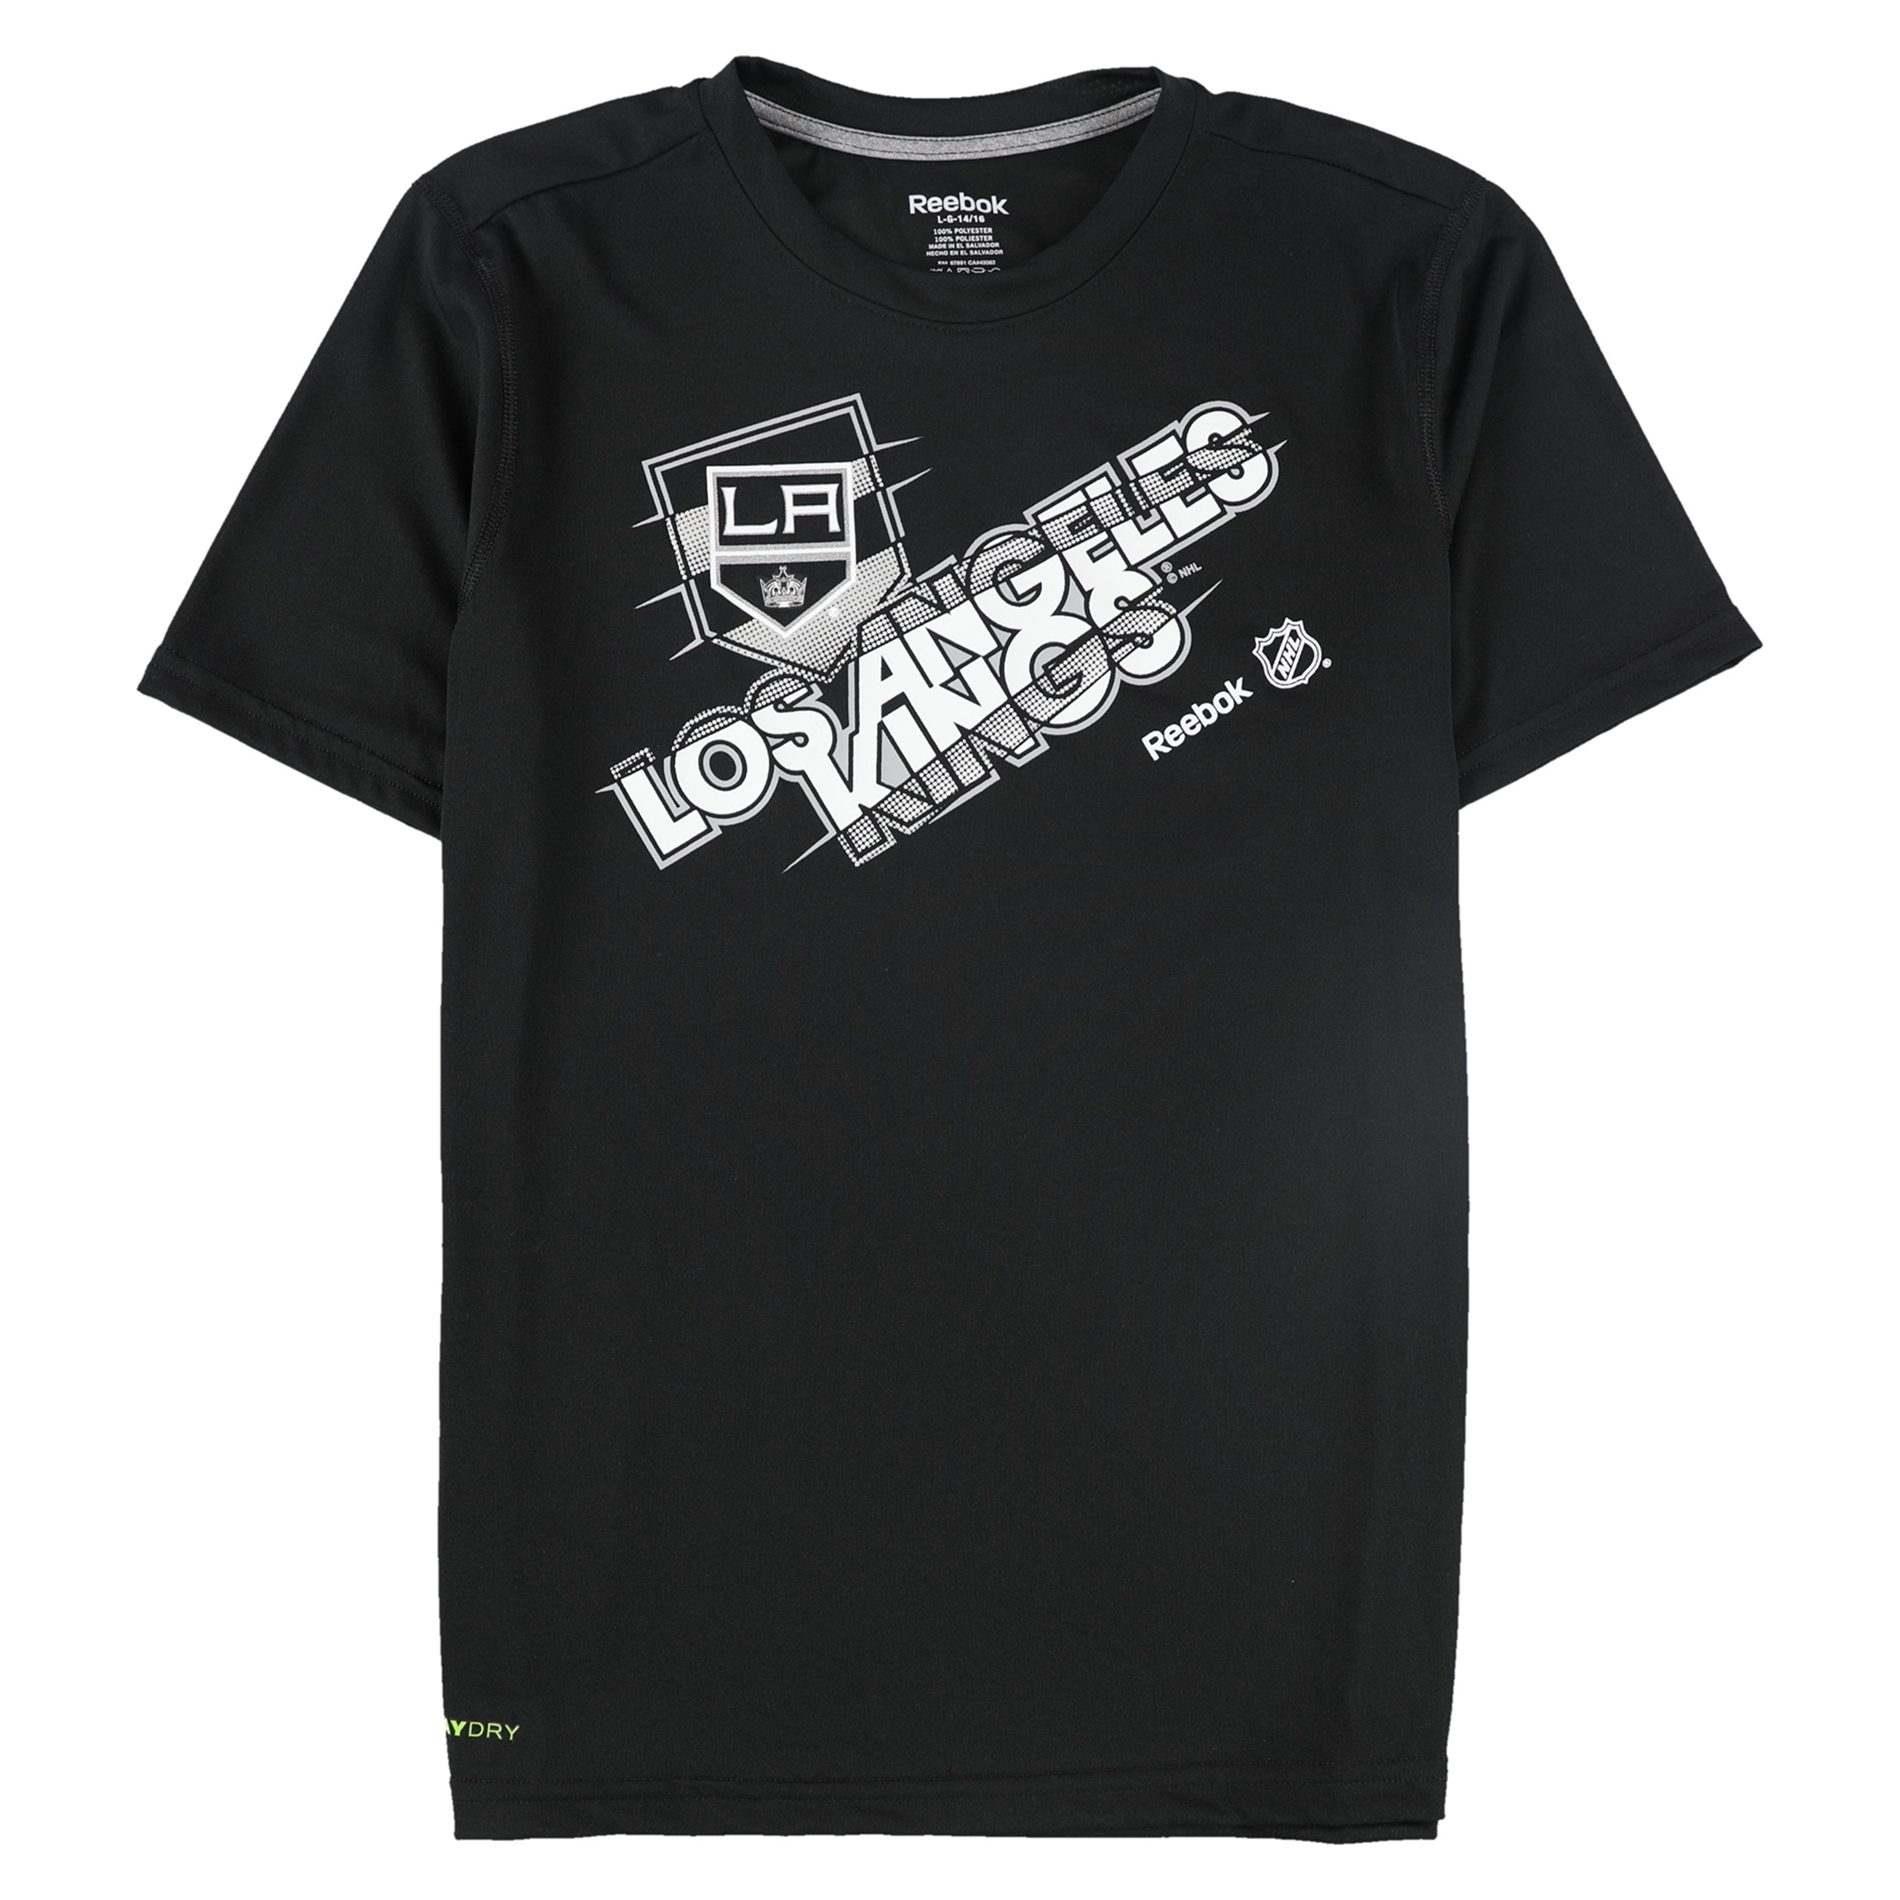 Reebok Boys Los Angeles Kings Graphic T-Shirt